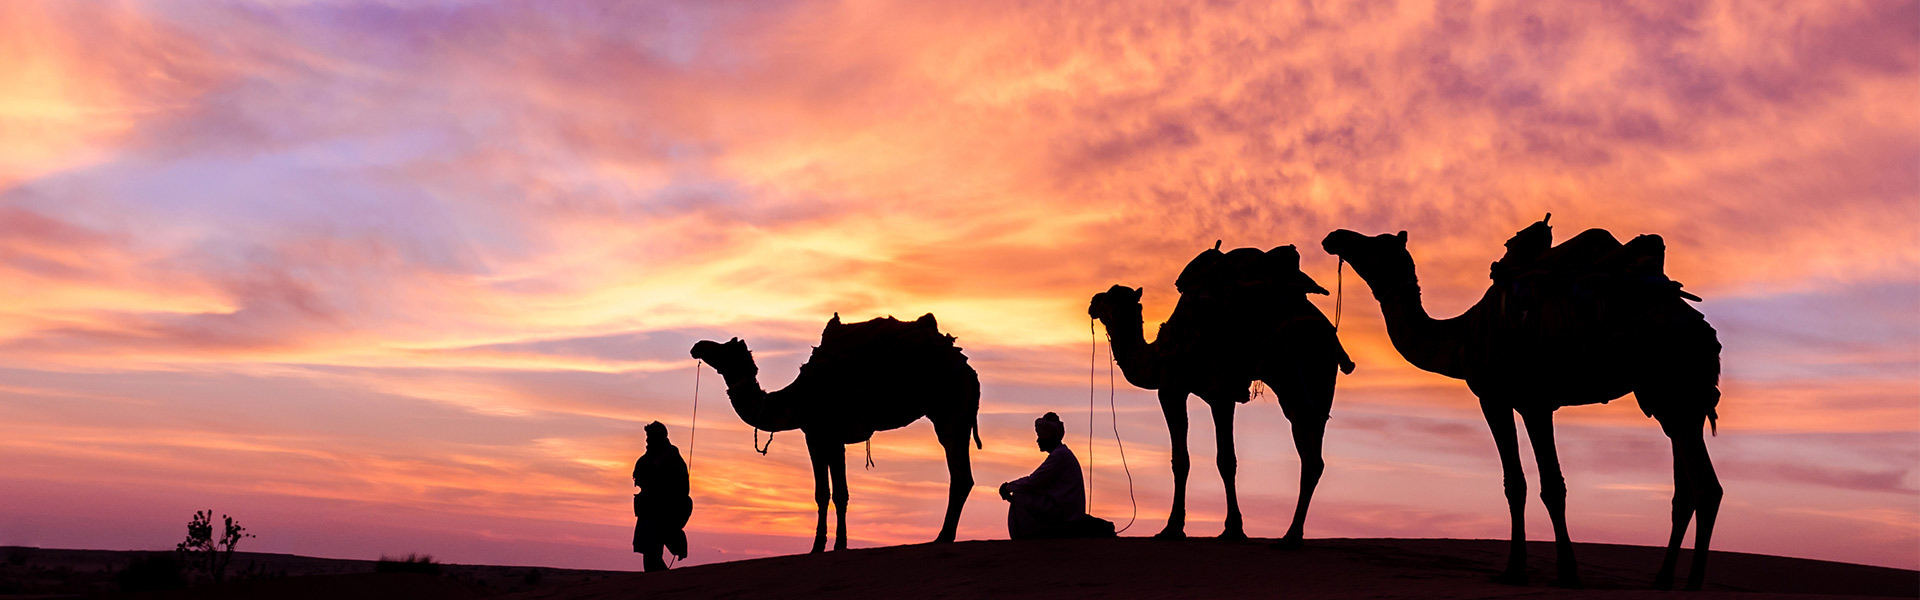 Kamele in der Abu Dhabi Wüste bei Nacht 